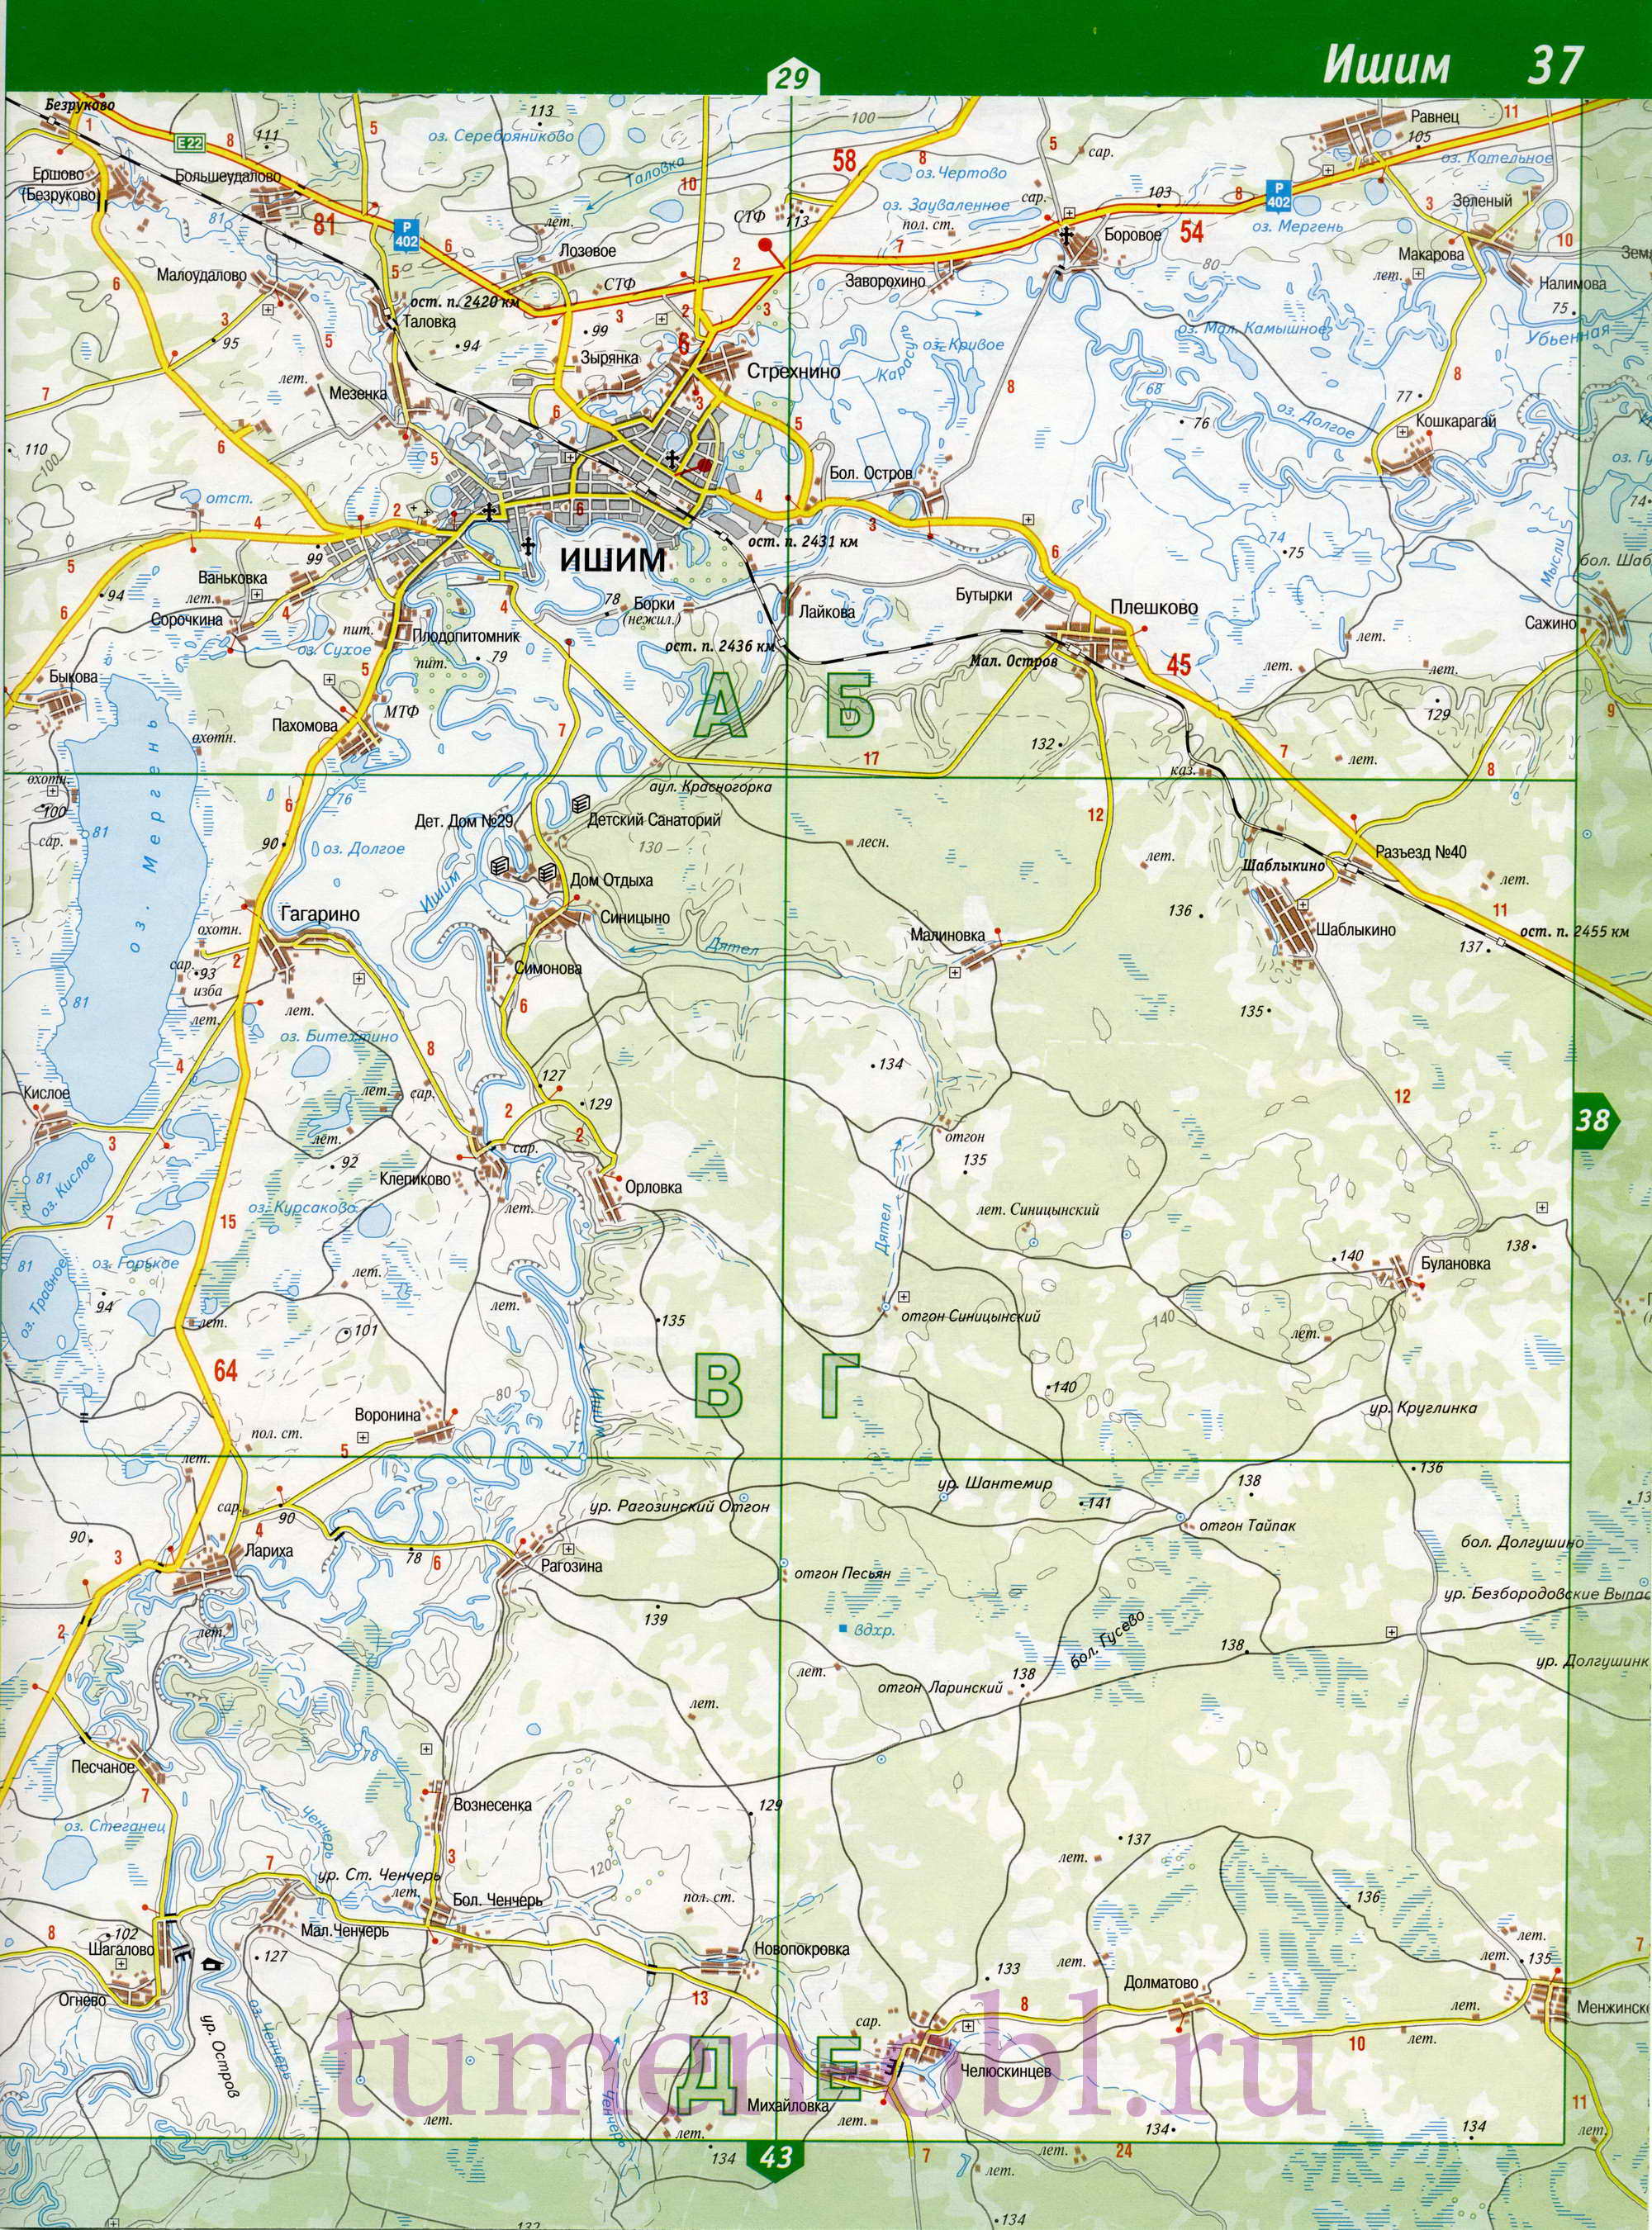 Карта Ишимский район Тюменской области. Подробная крупномасштабная карта Ишимского района, B1 - 